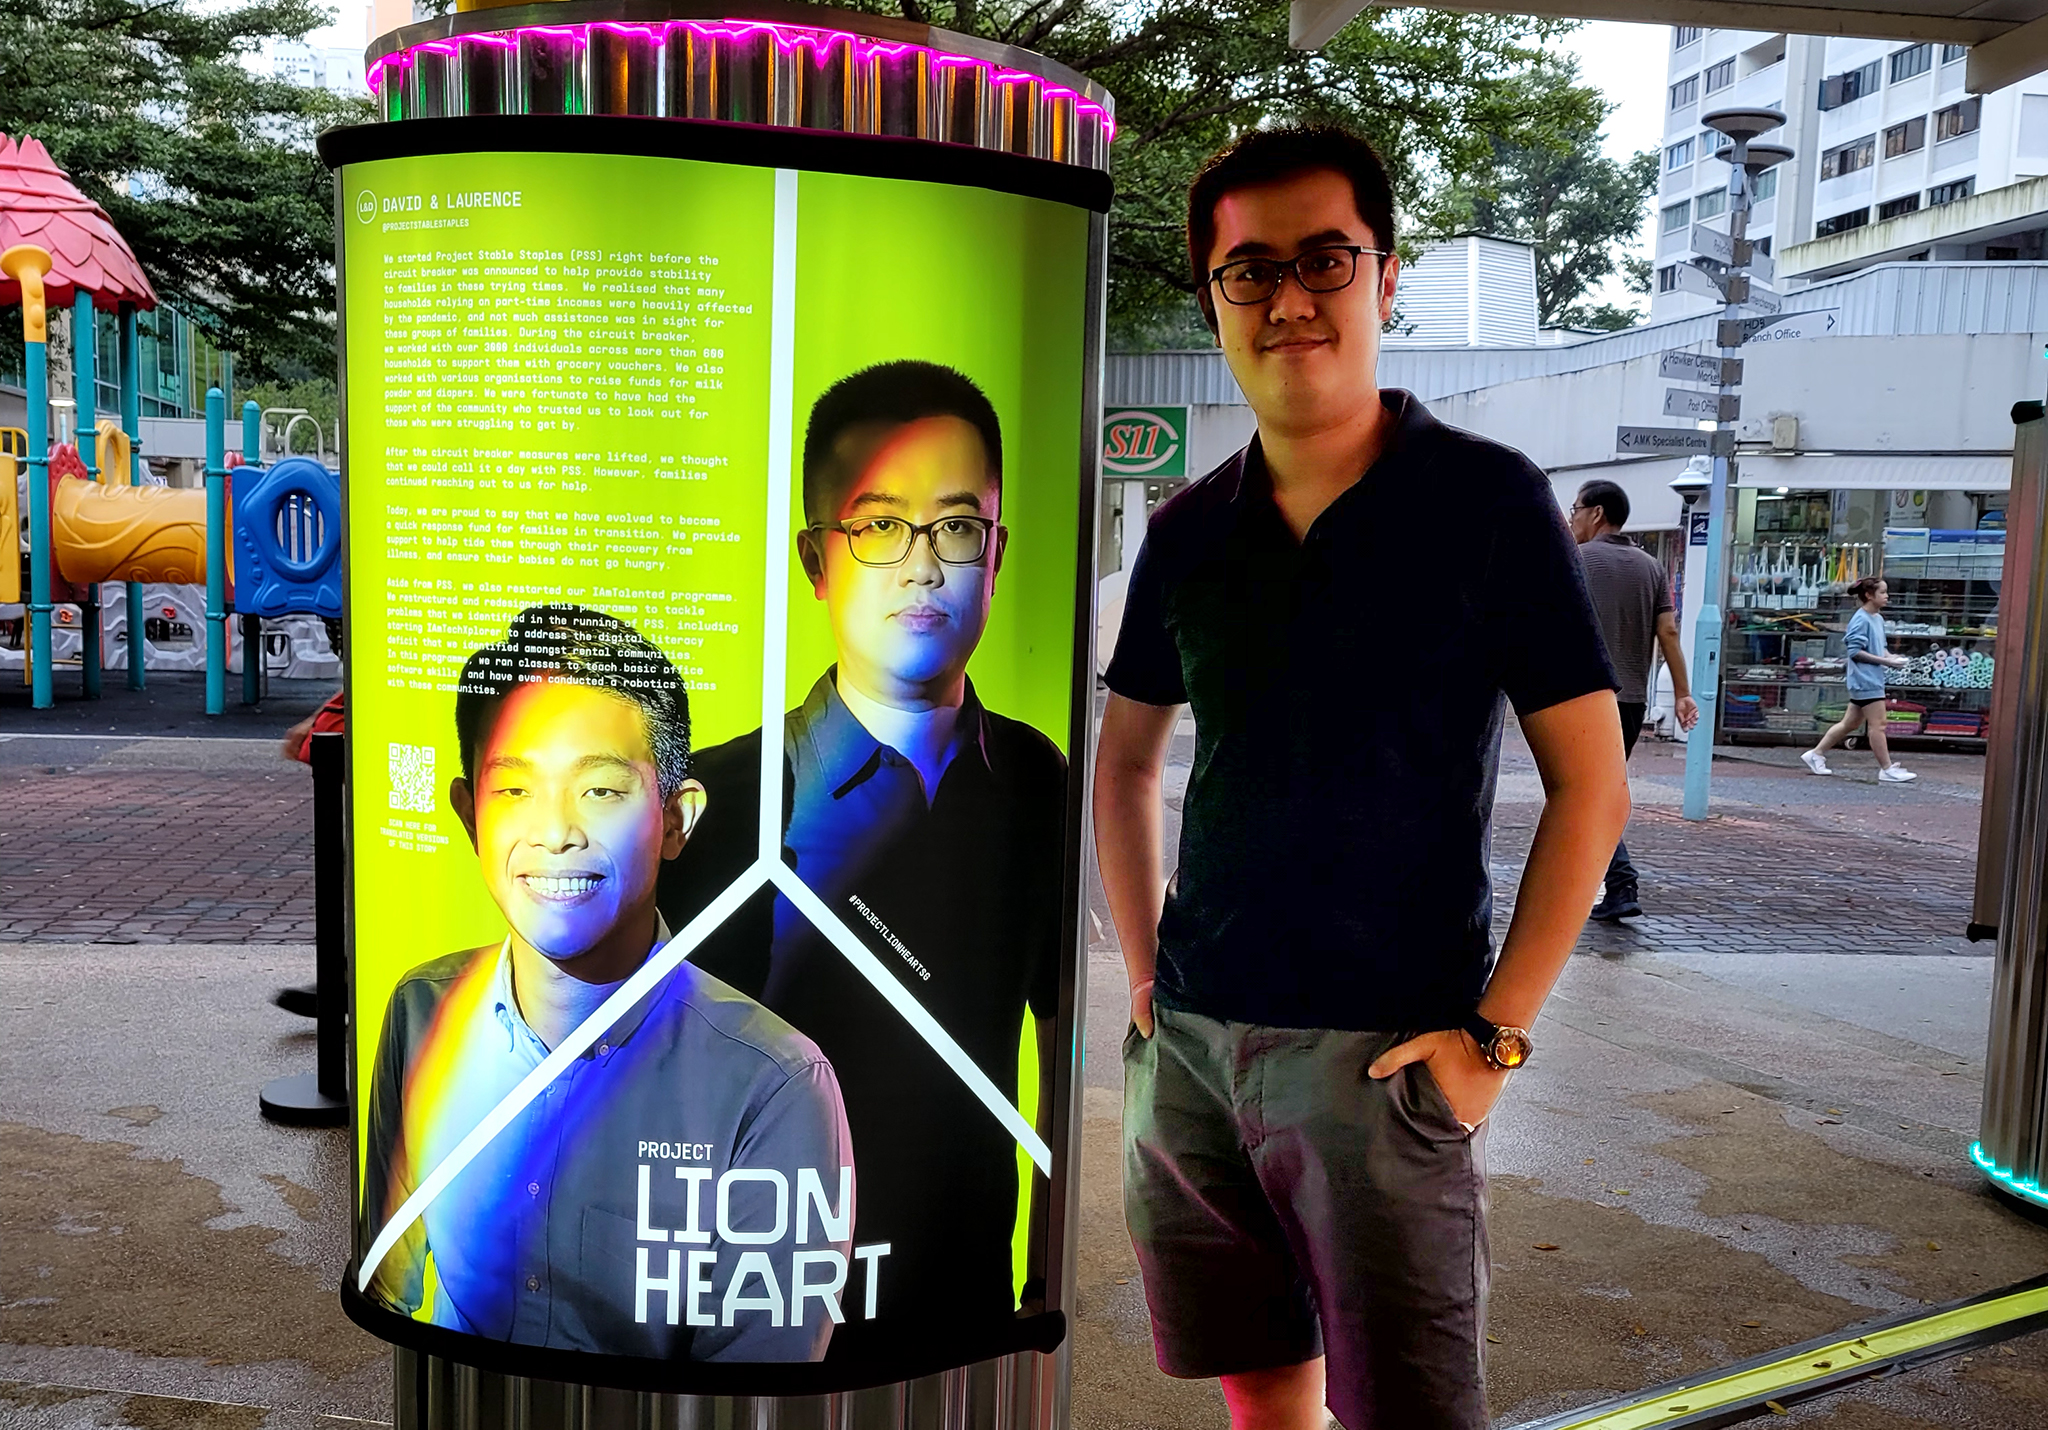 Project Lionheart